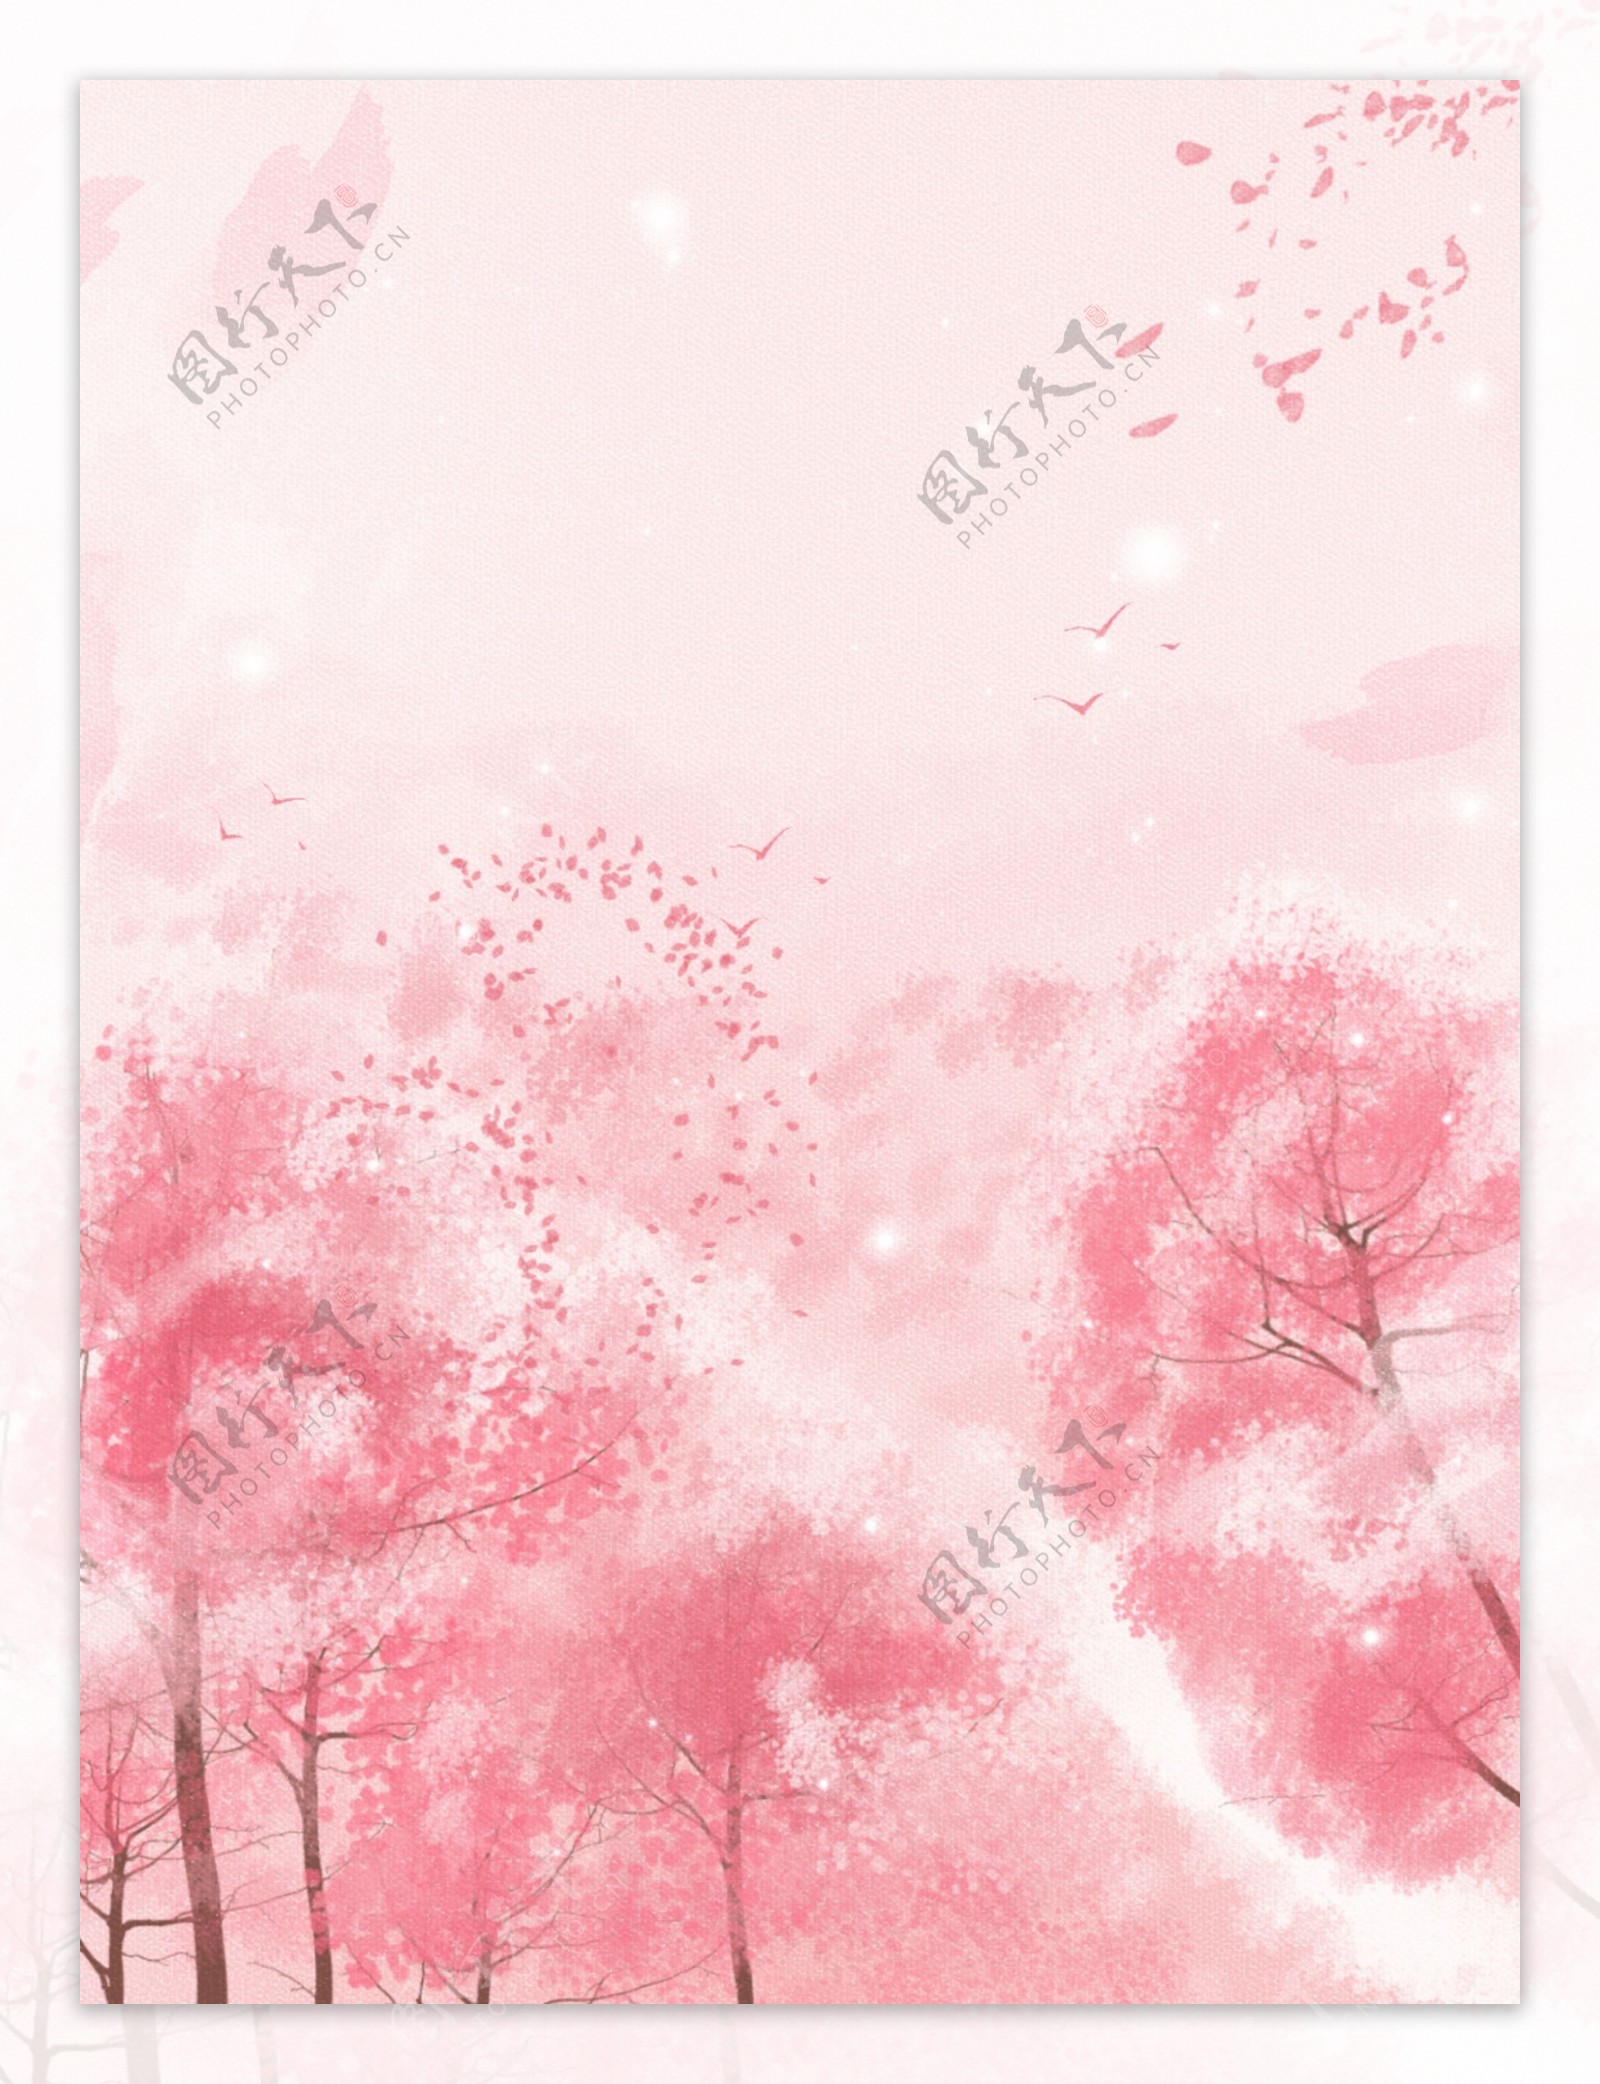 纯原创手绘唯美樱花开放粉色背景